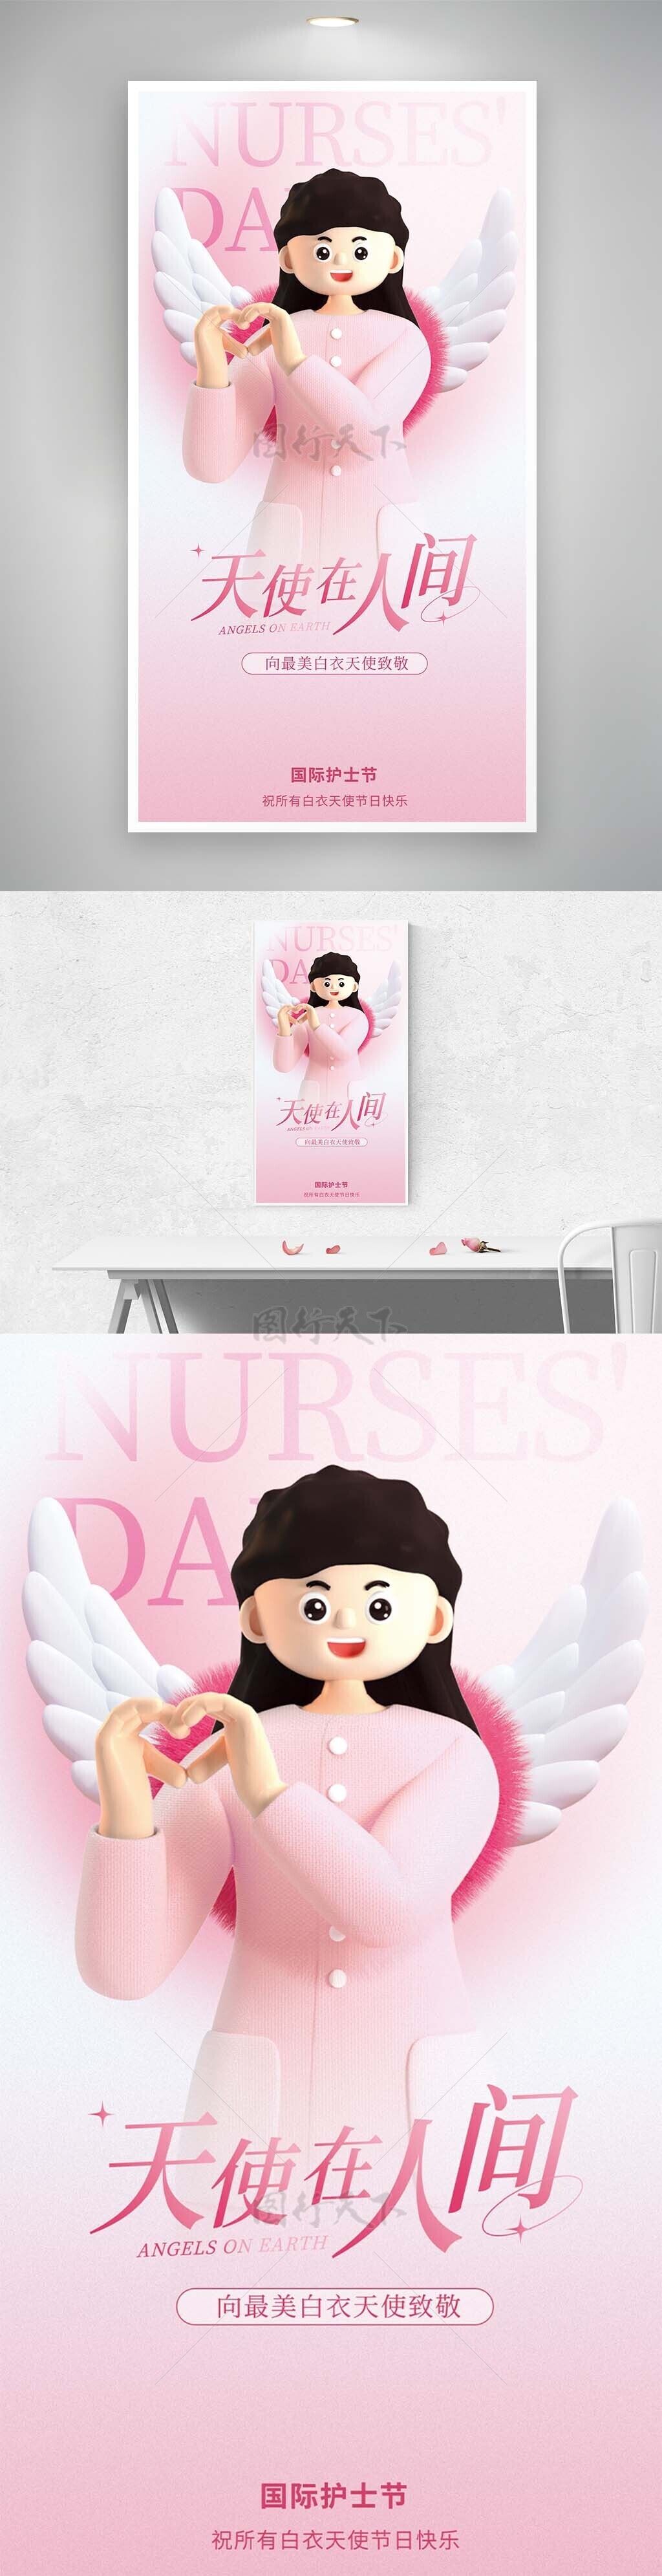 天使在人间创意3D立体卡通护士节海报